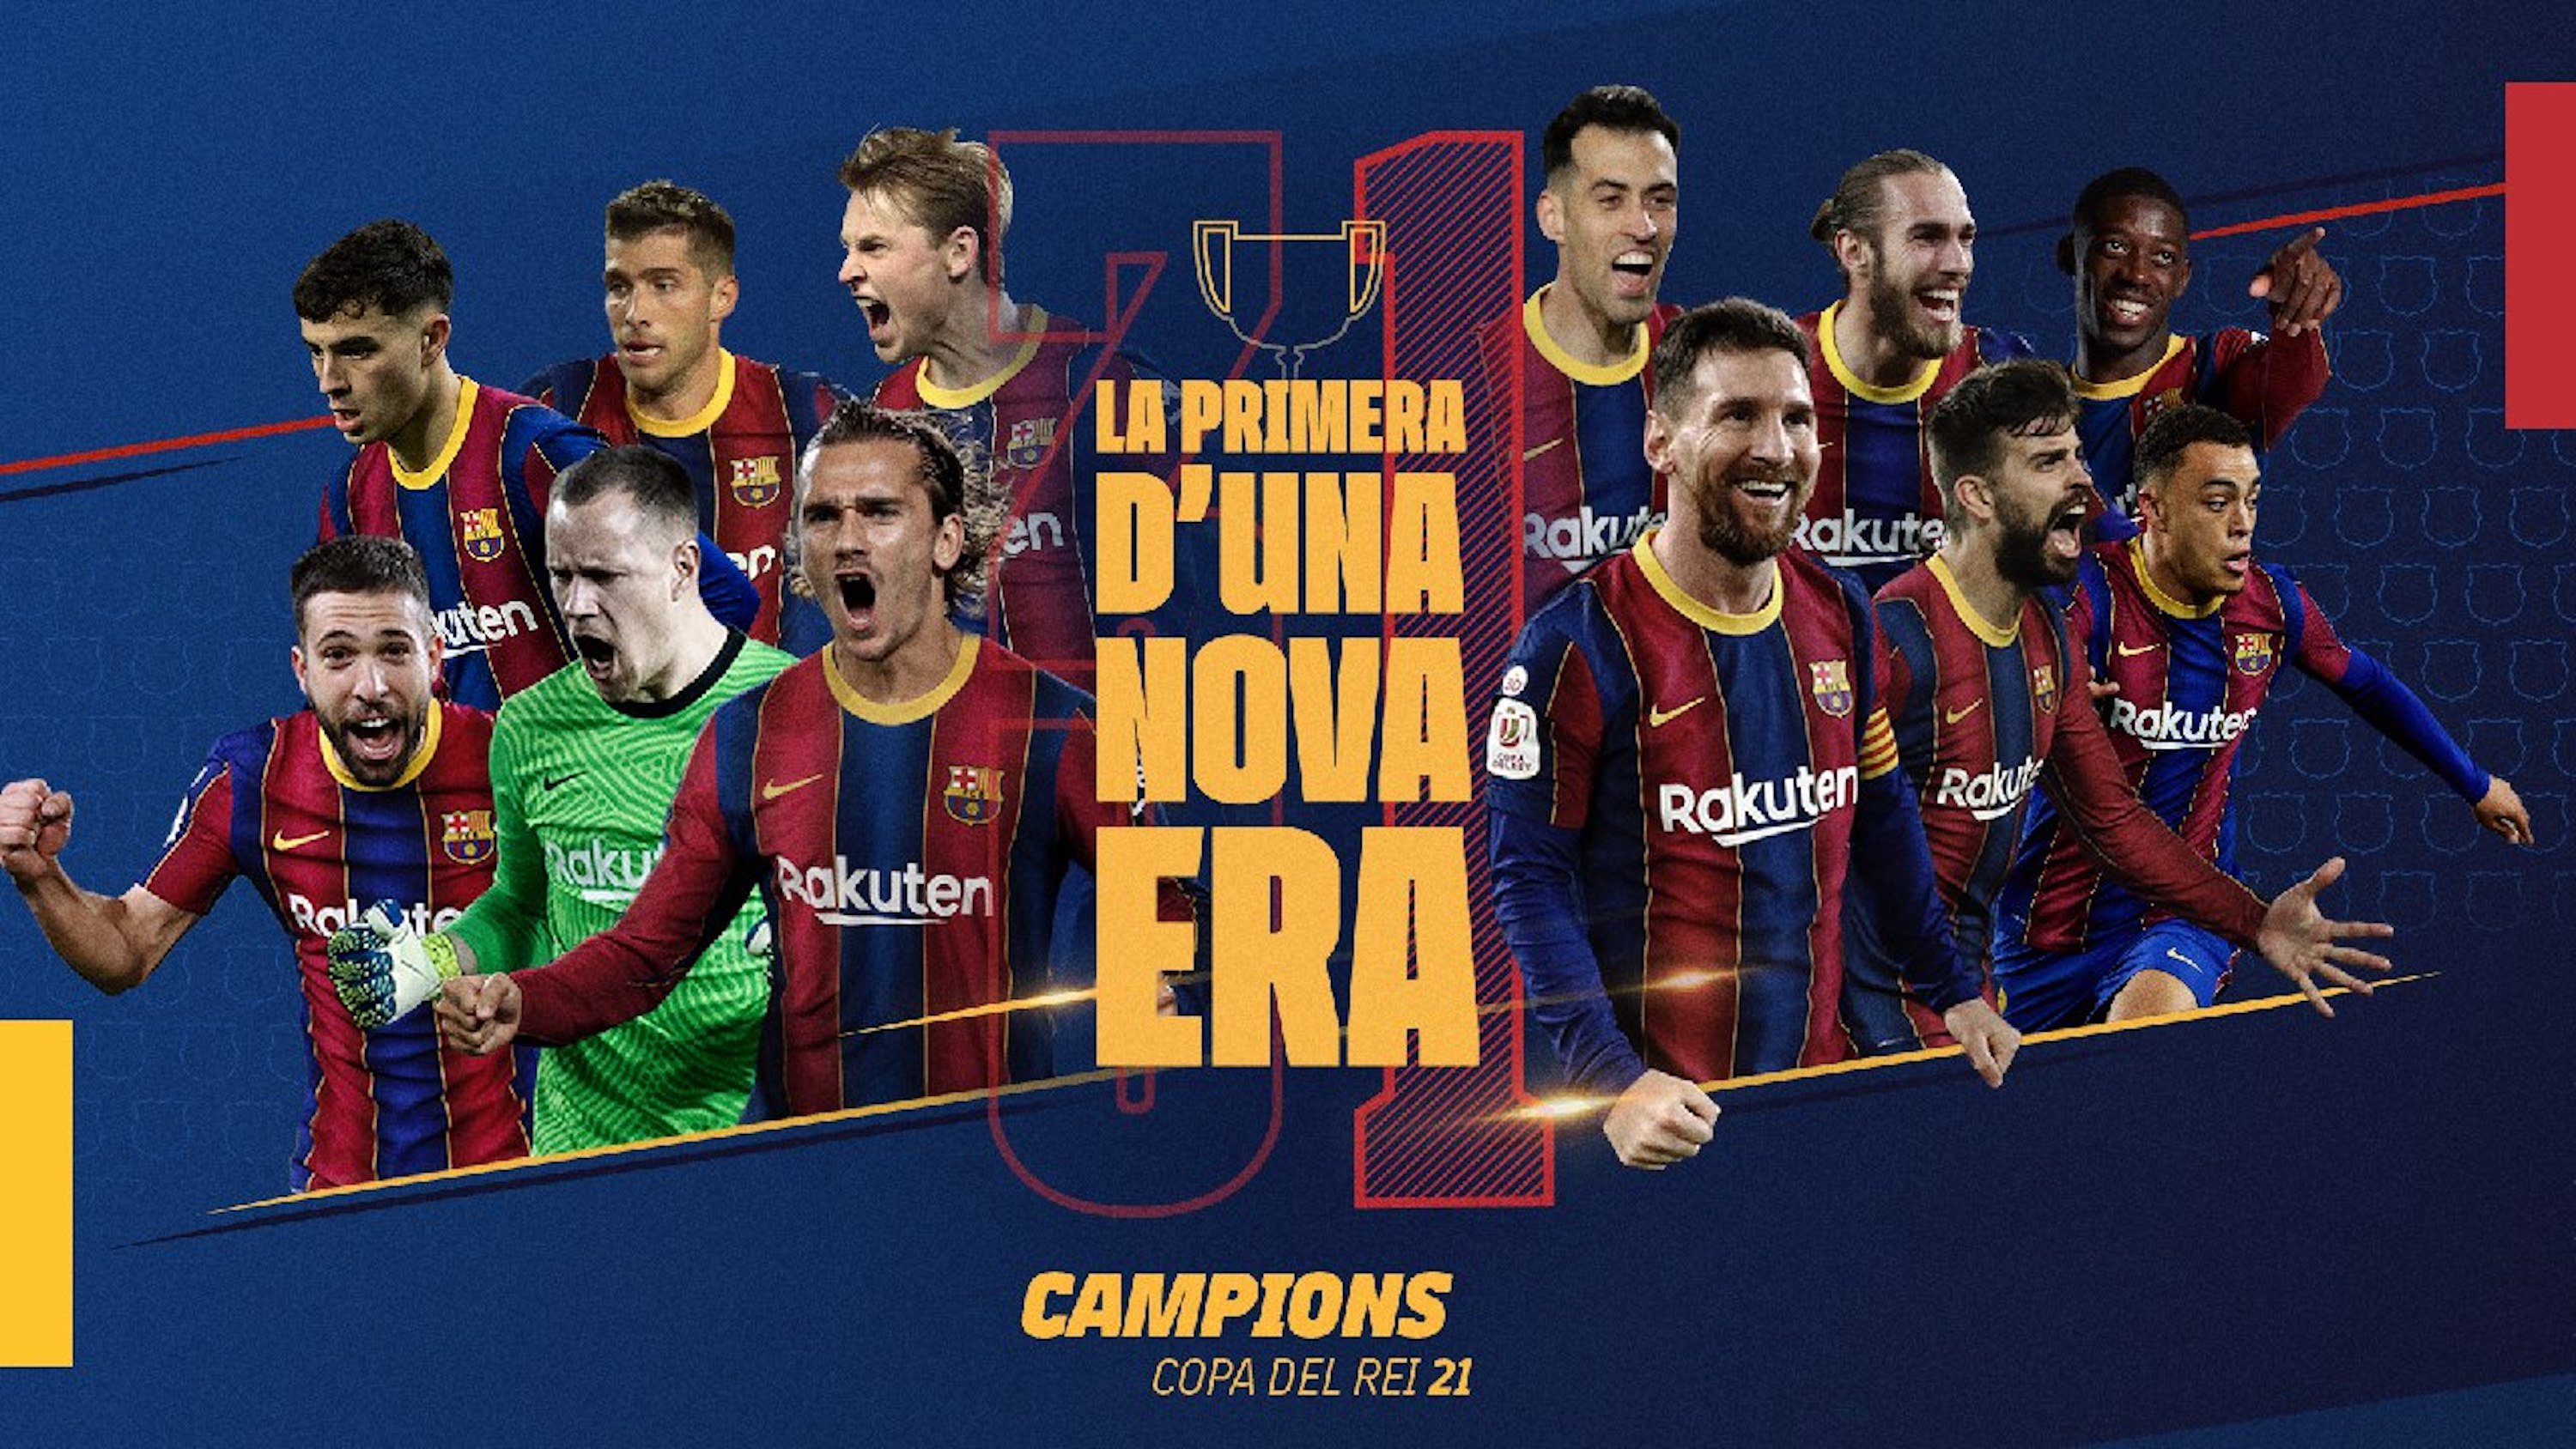 L'emotiu i èpic vídeo del Barça: "La primera d'una nova era"